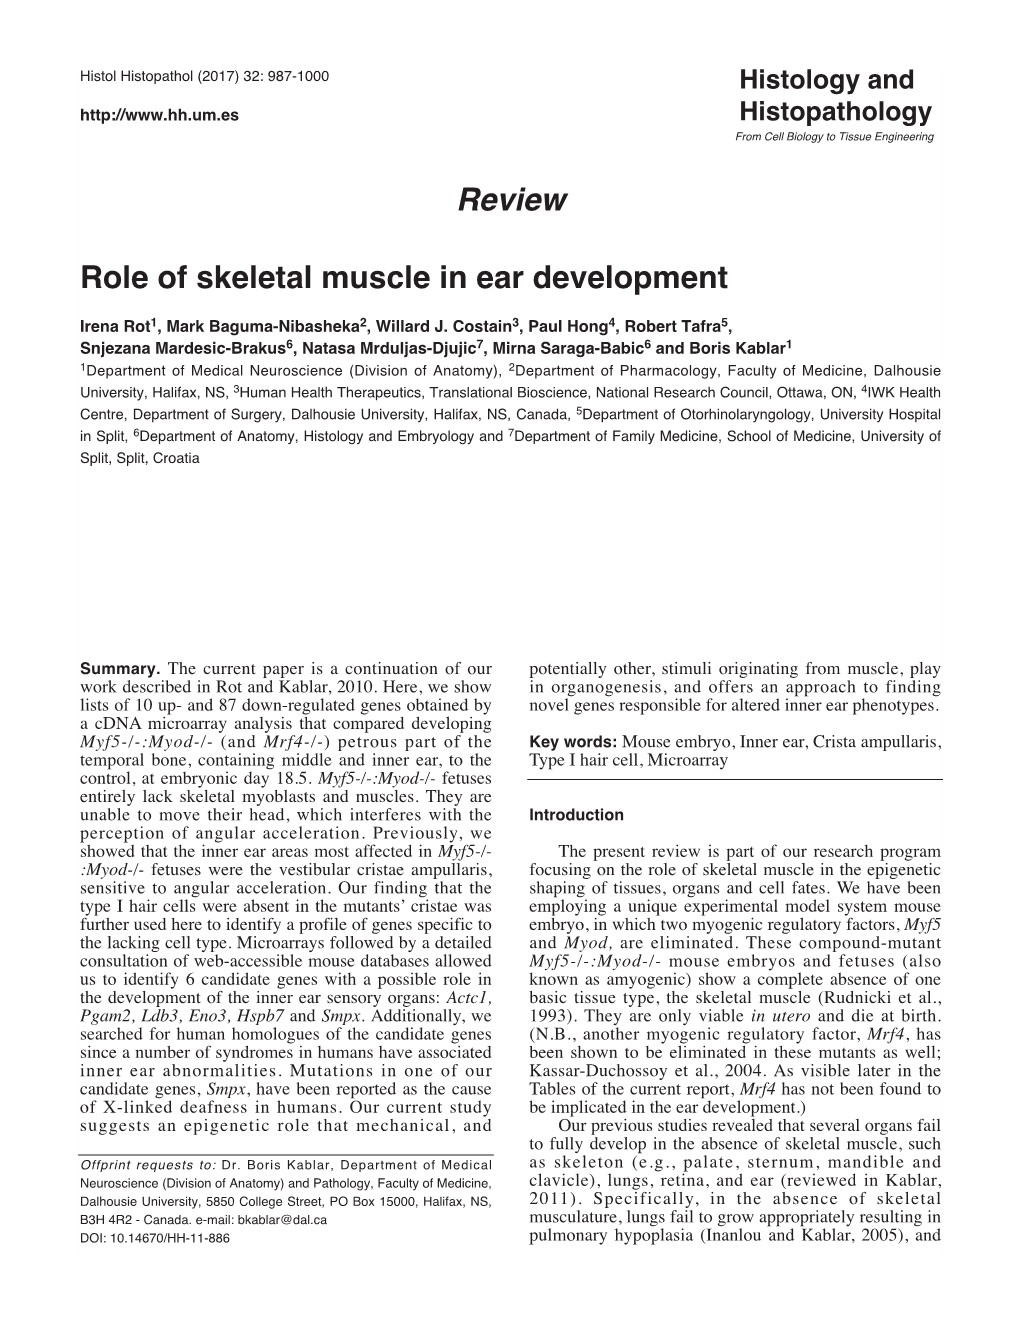 Review Role of Skeletal Muscle in Ear Development